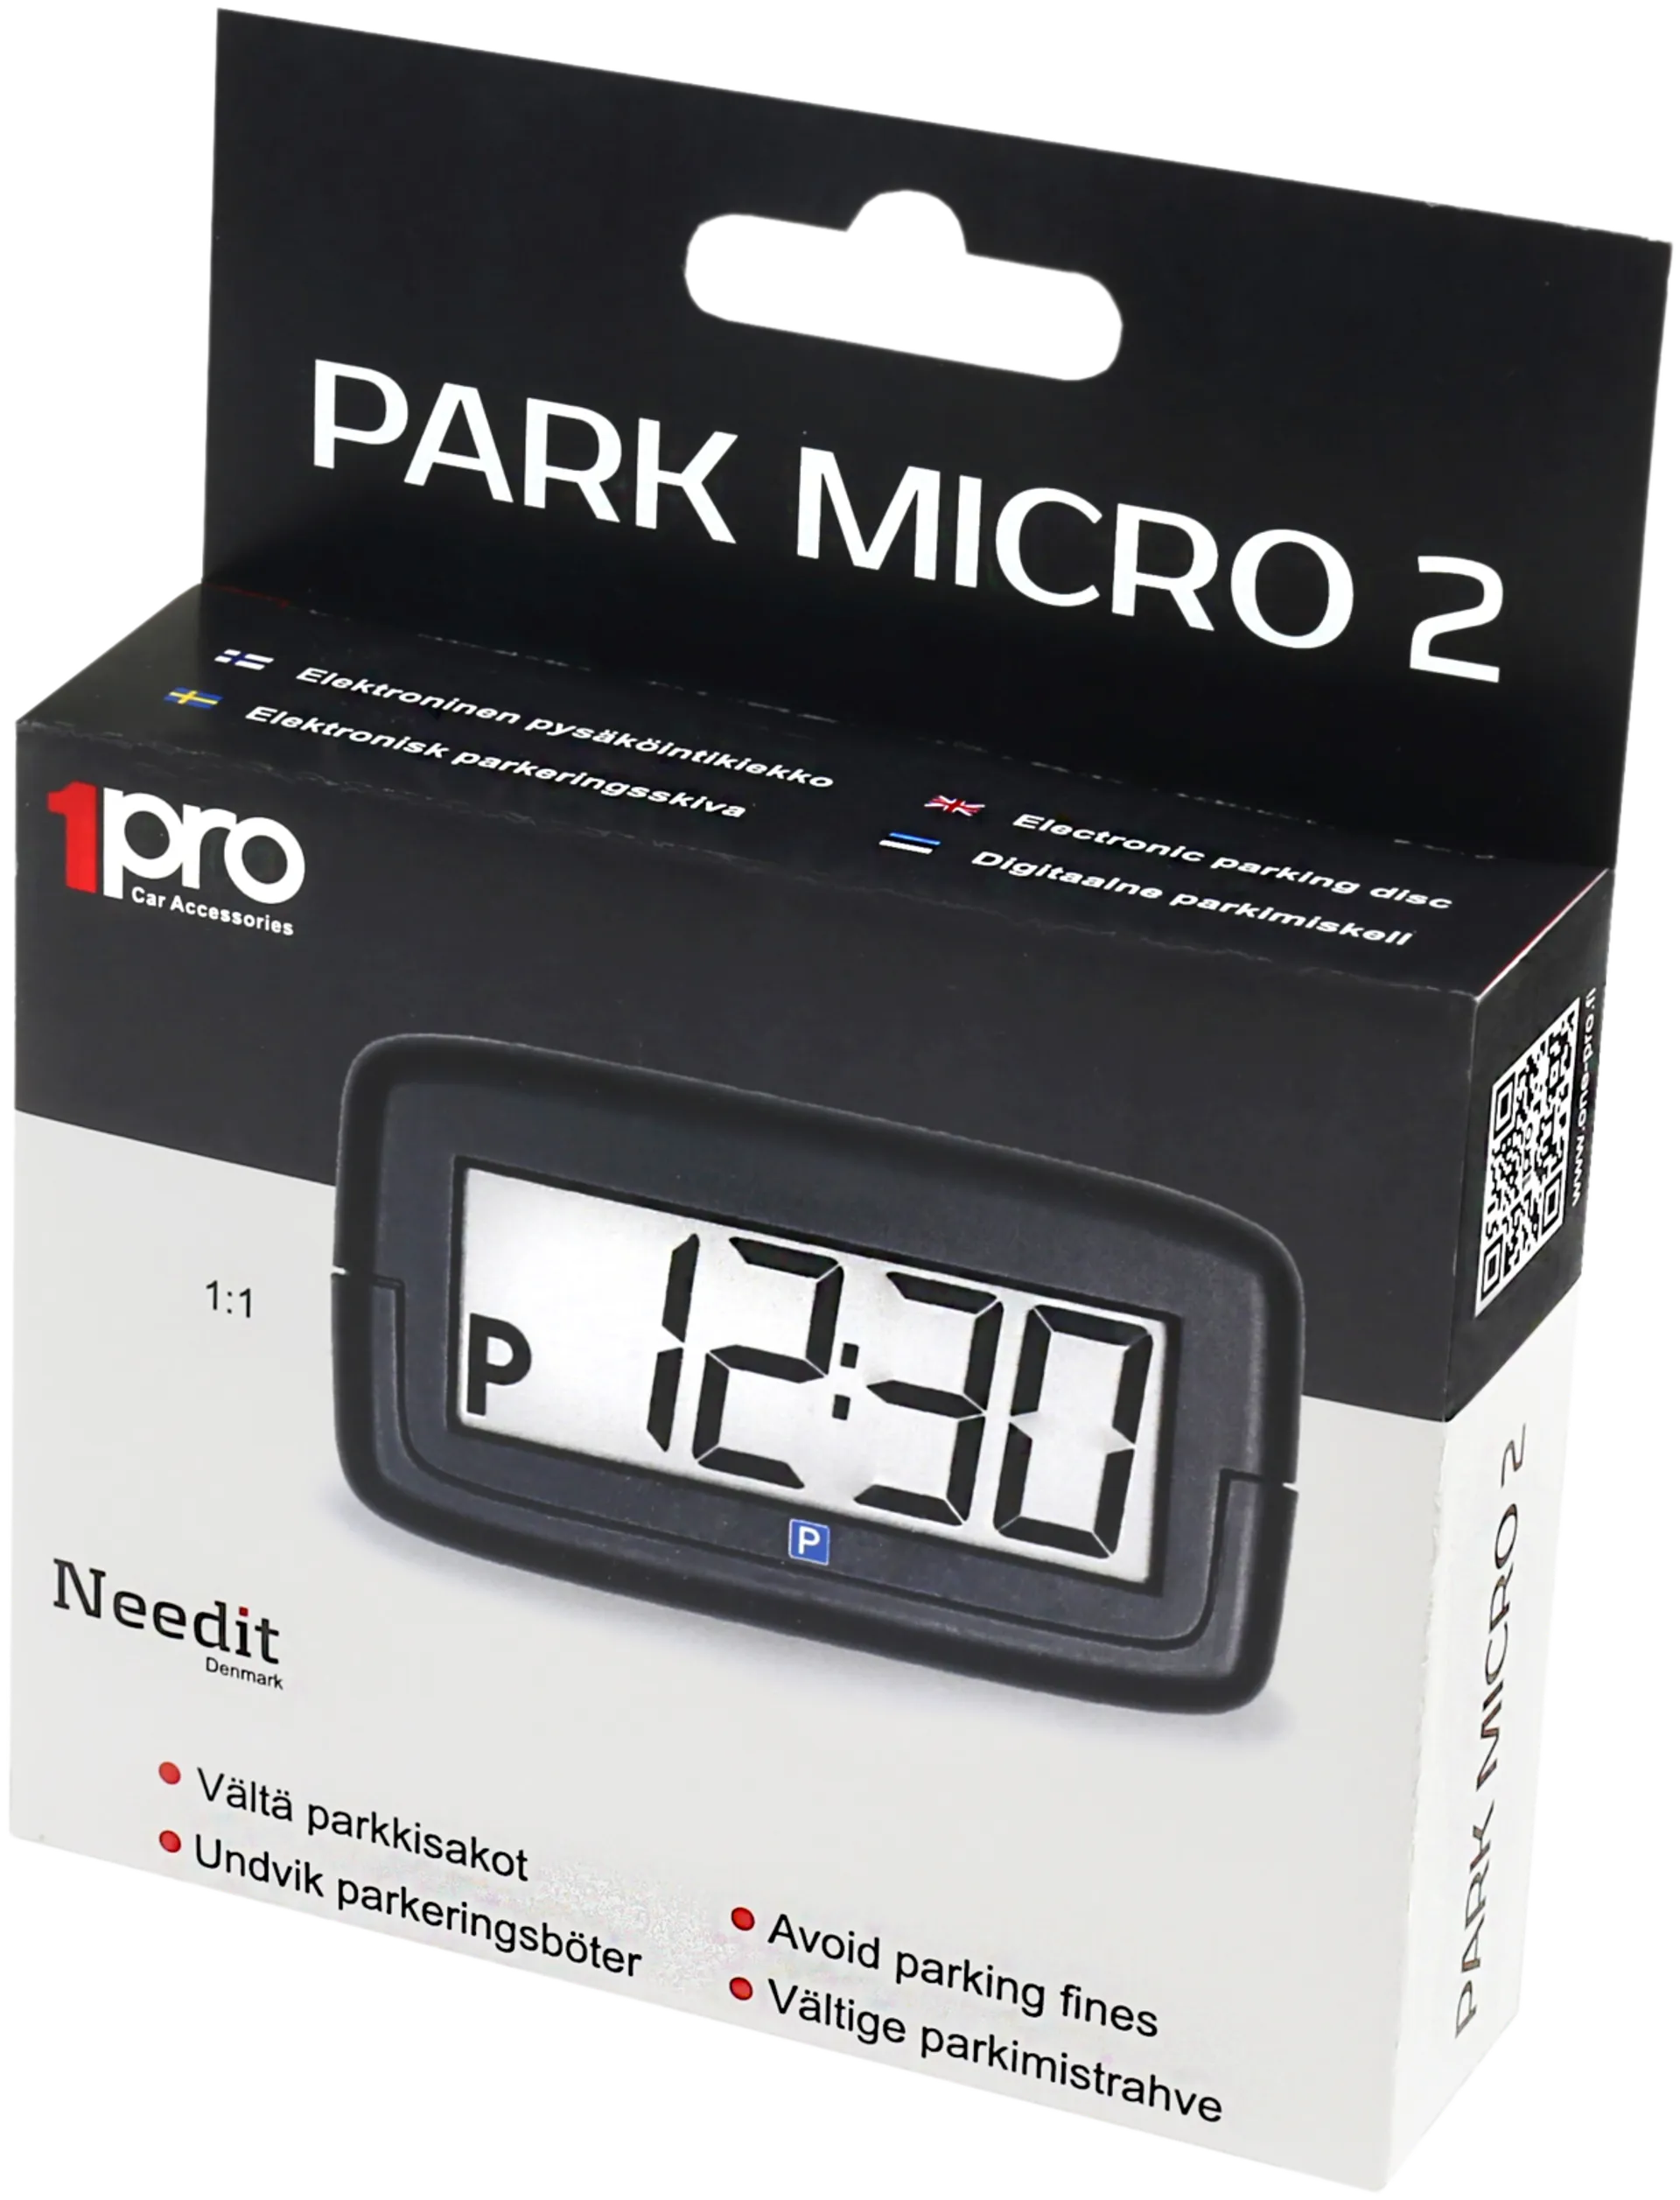 Needit Park Micro 2  Prisma verkkokauppa